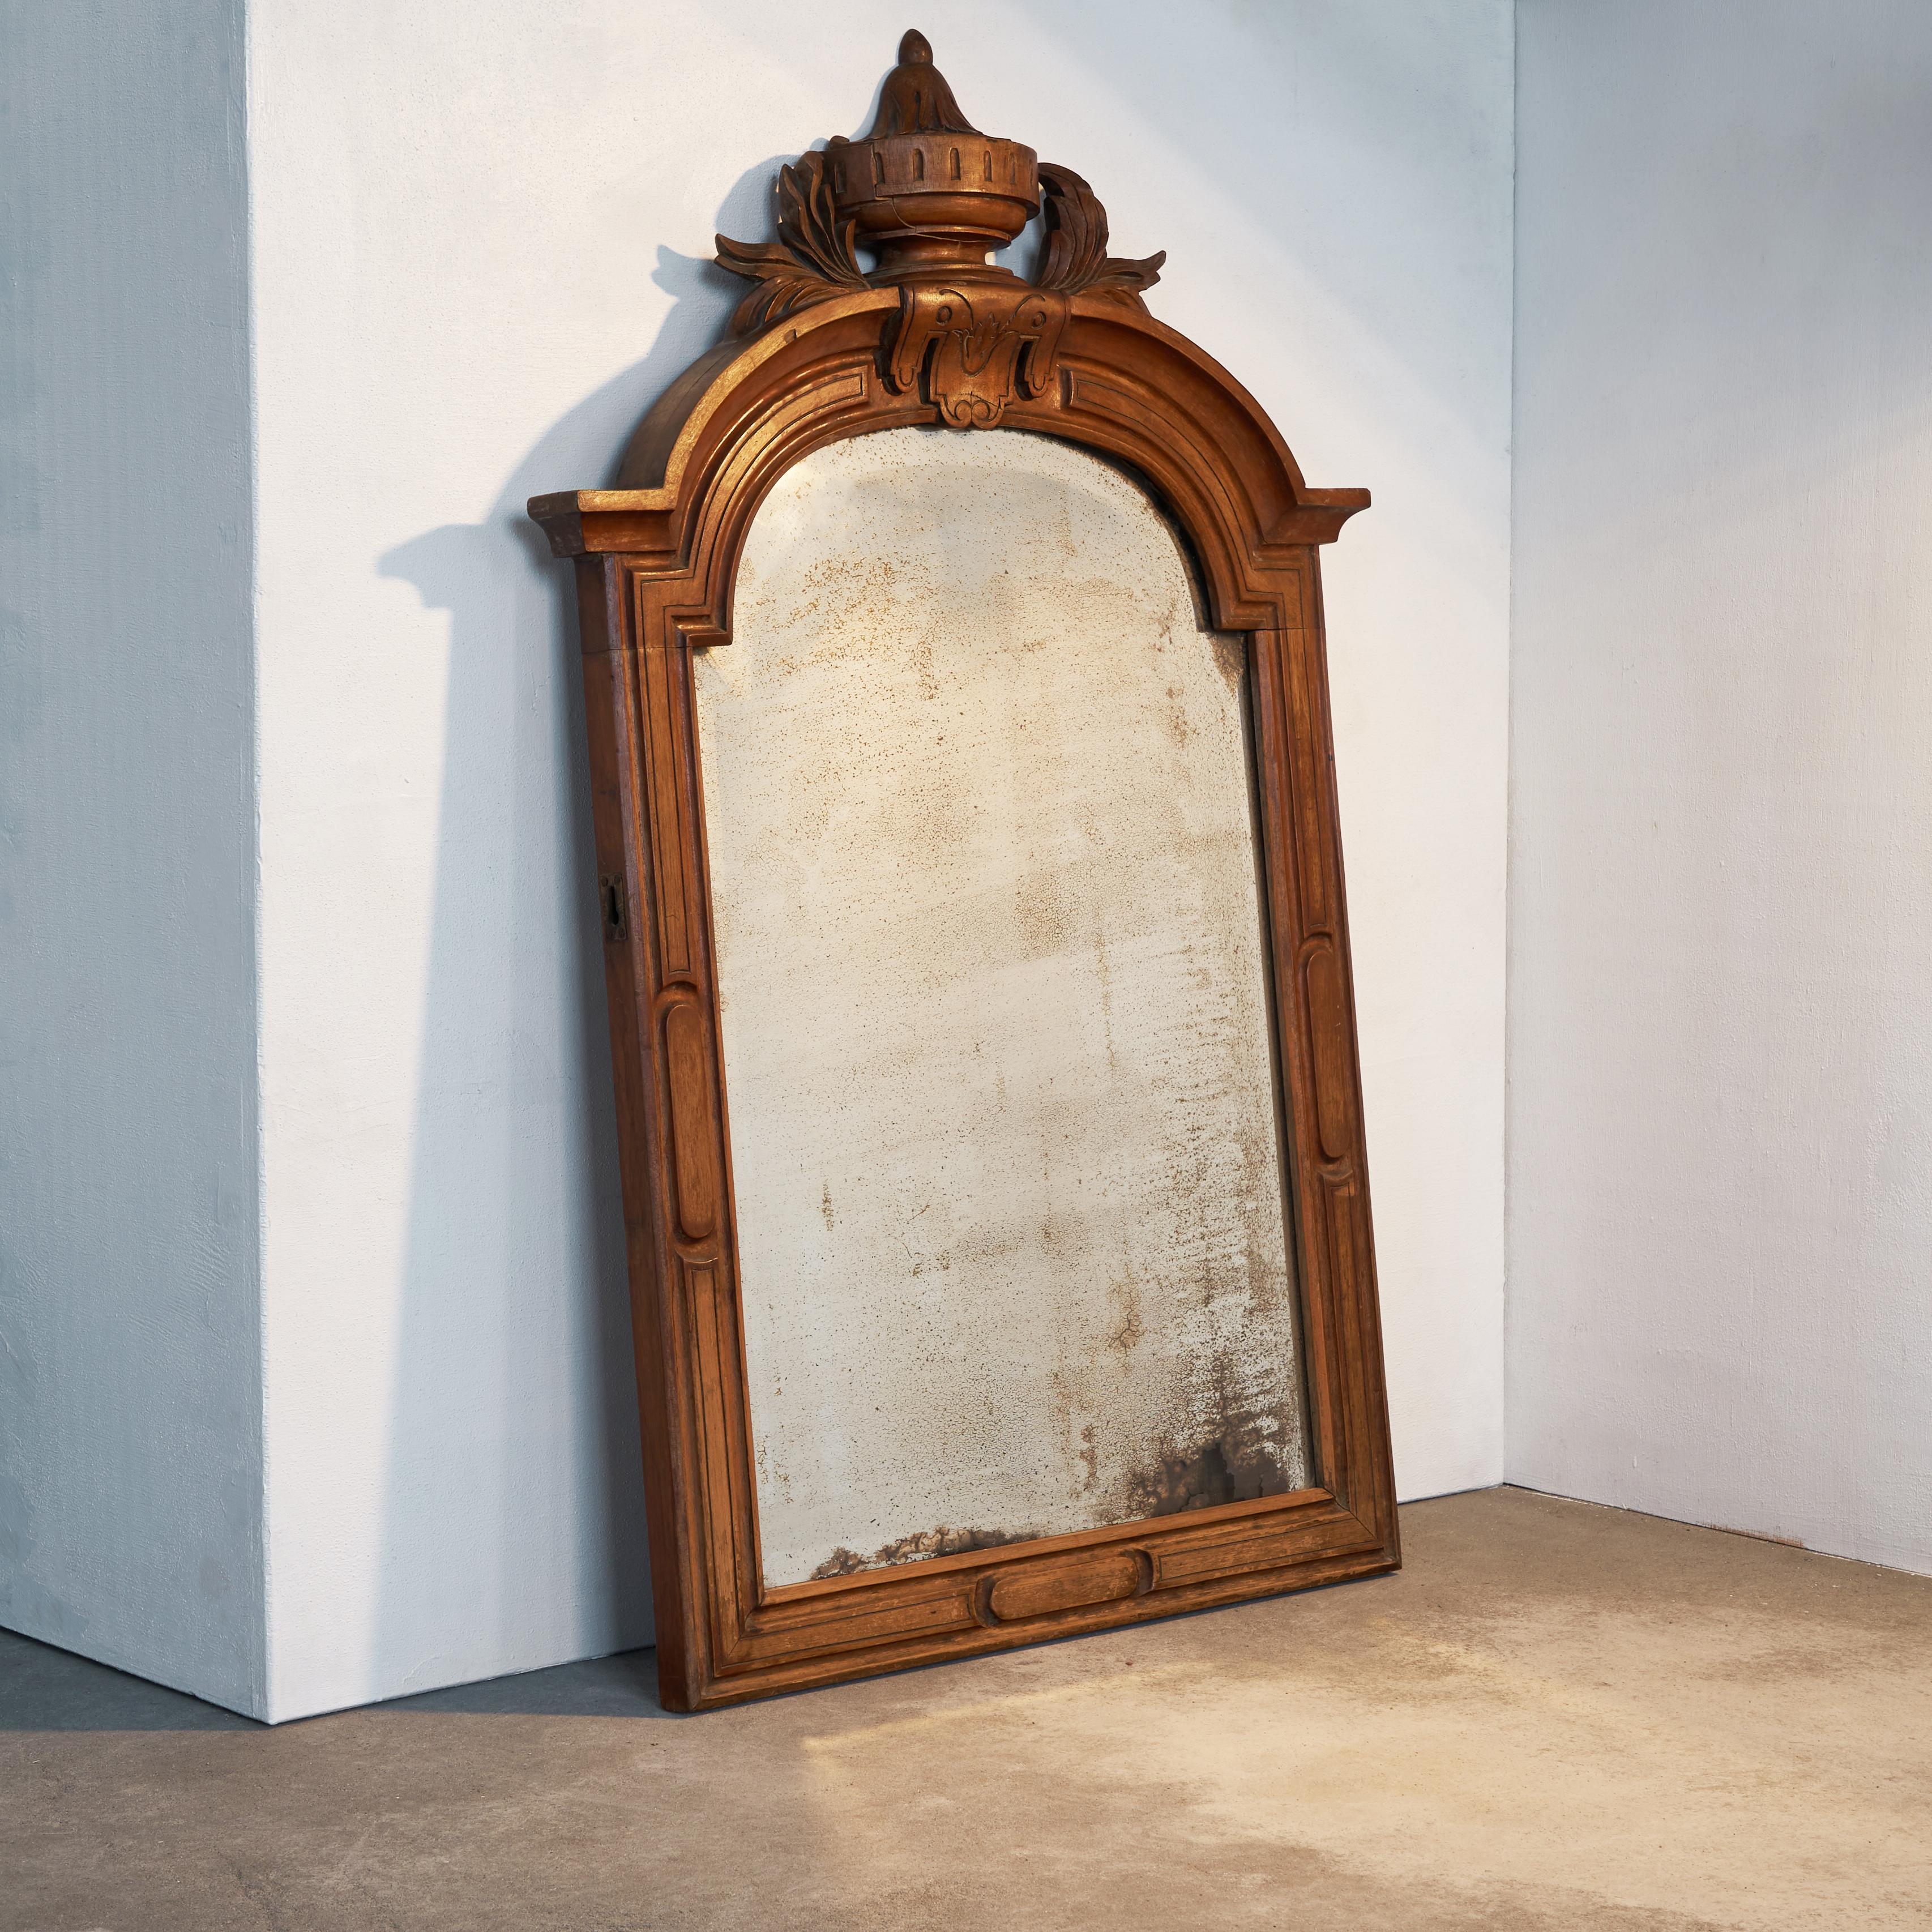 Miroir patiné dans un cadre en acajou sculpté, fin du XIXe siècle.

Il s'agit d'un miroir très décoratif dans un cadre magnifiquement sculpté en acajou. La décoration élégante est classique mais pas excessive. La partie la plus spéciale de ce miroir